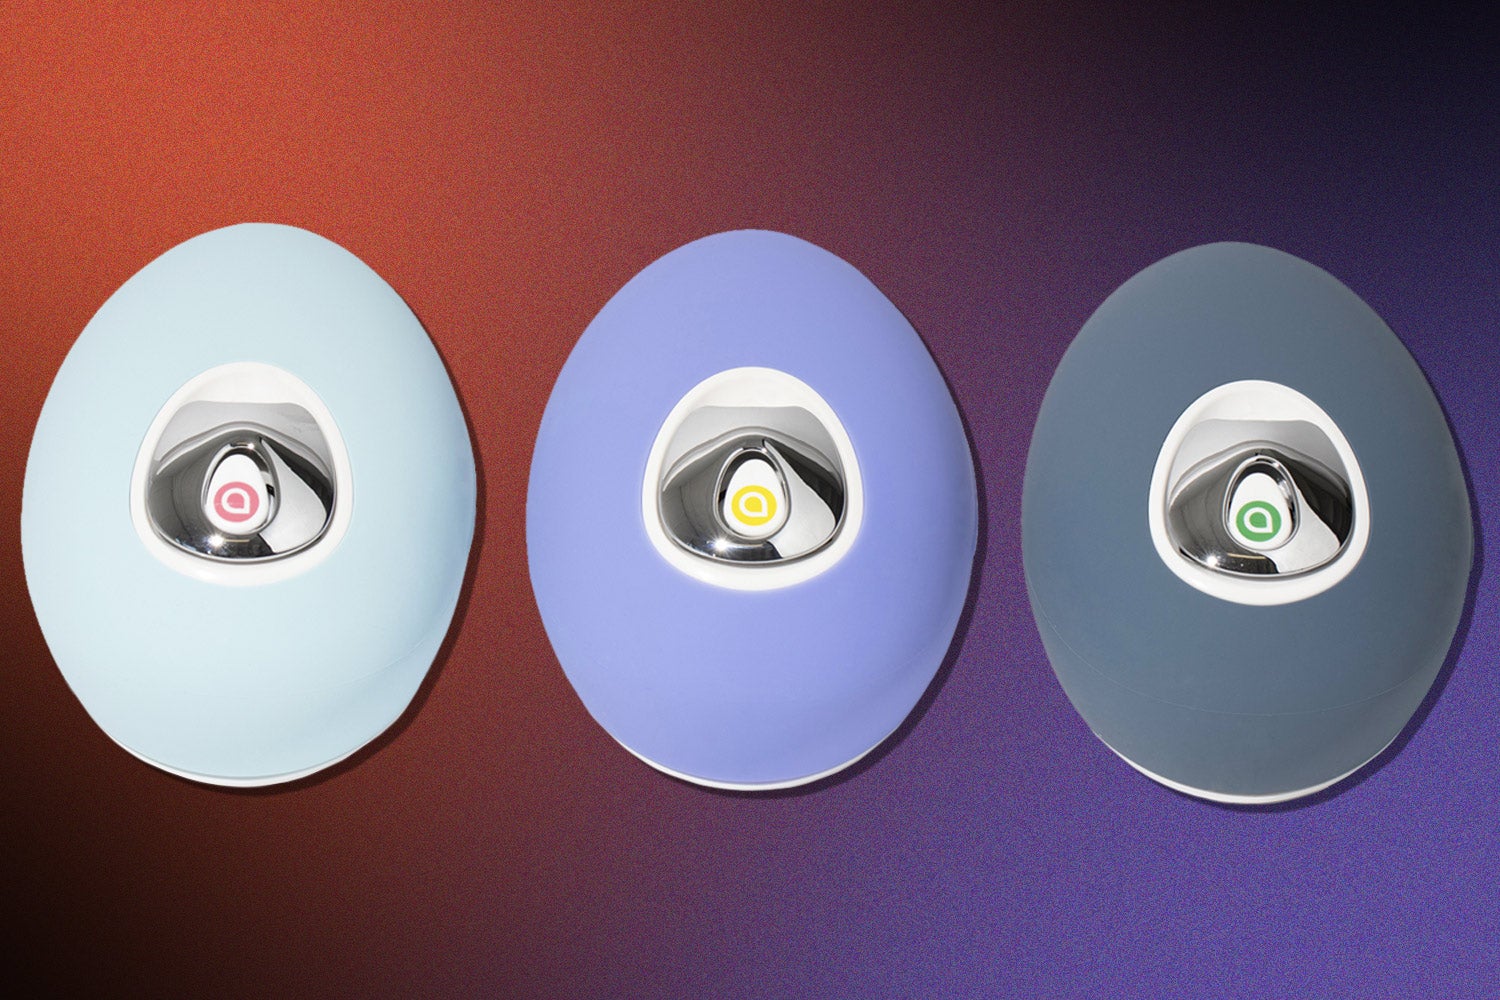 سه دستگاه گرد با دکمه های نقره ای